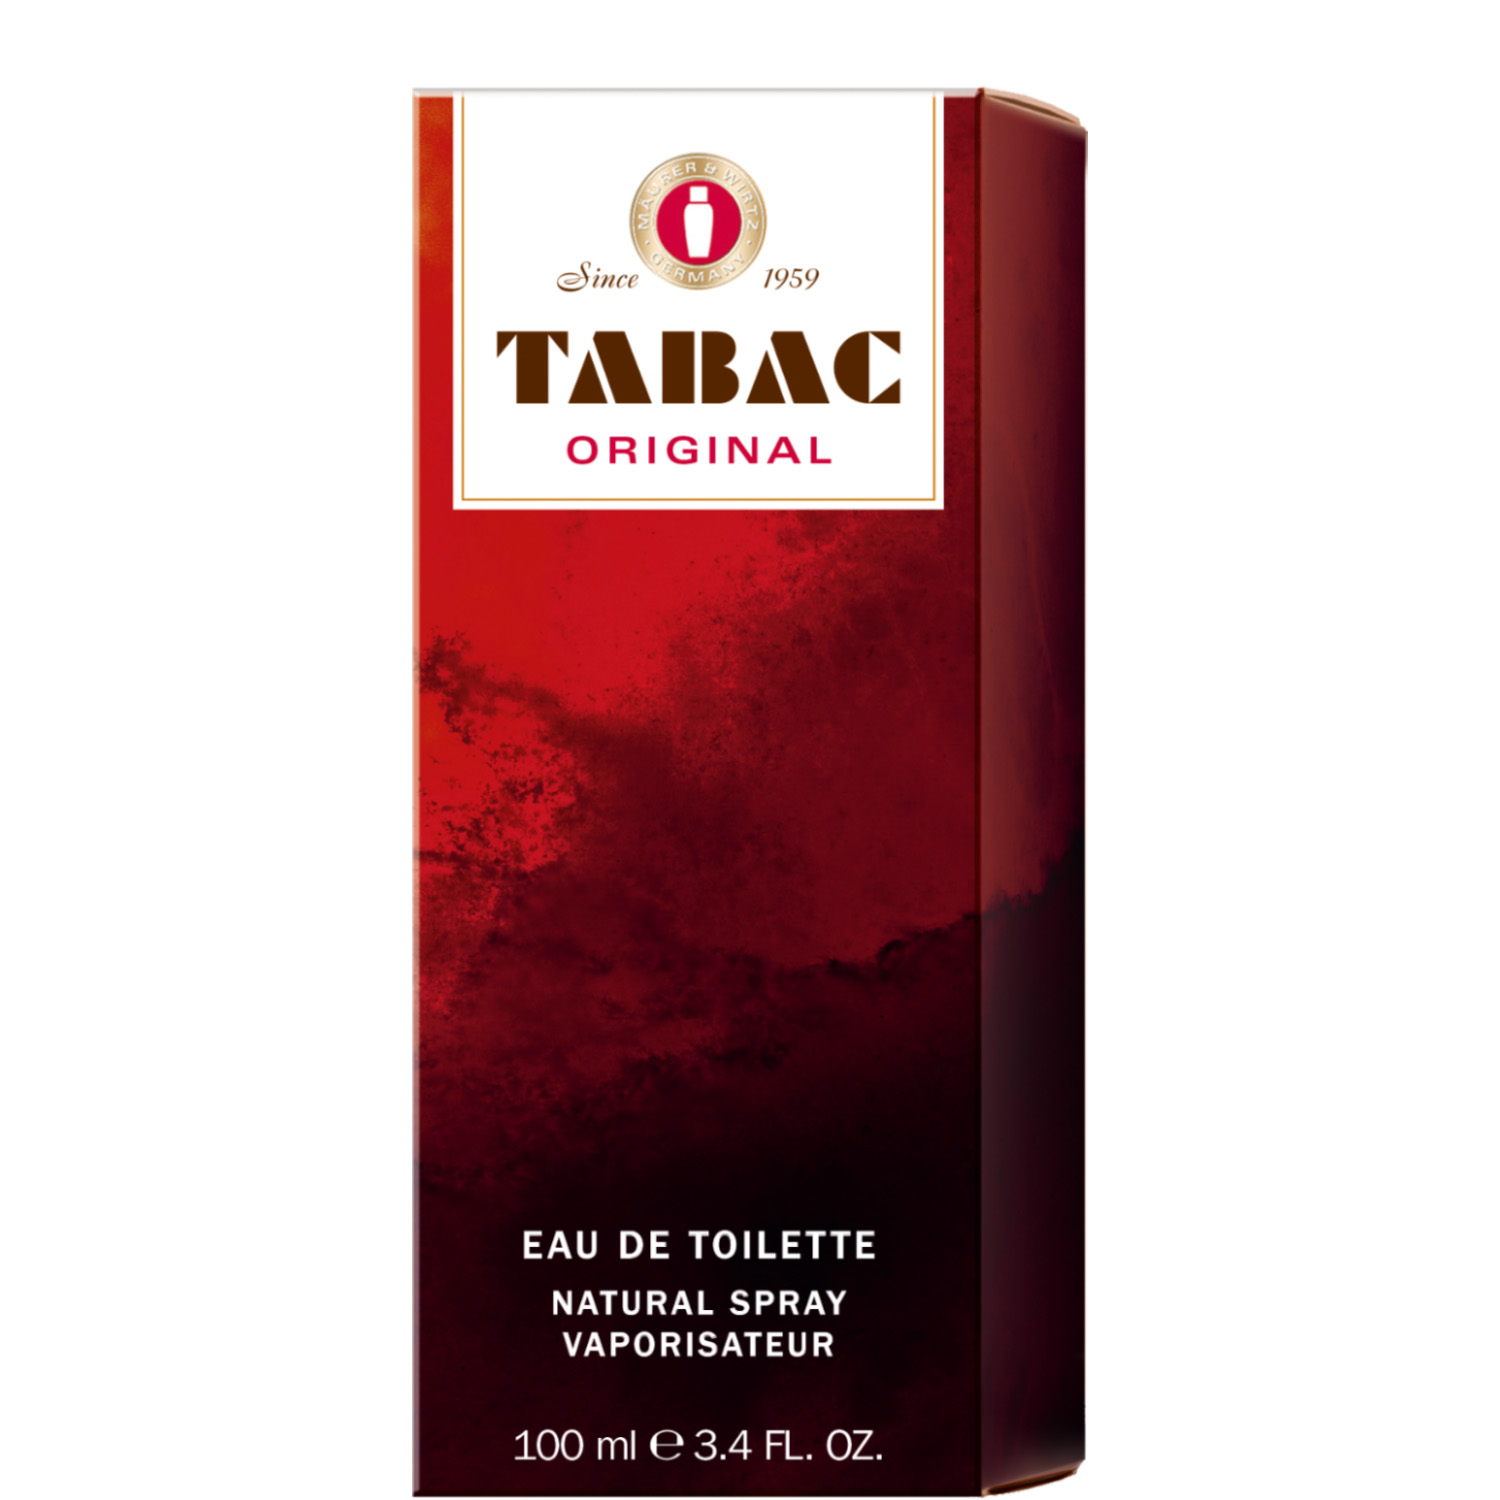 Tabac Original Eau de Toilette 100ml